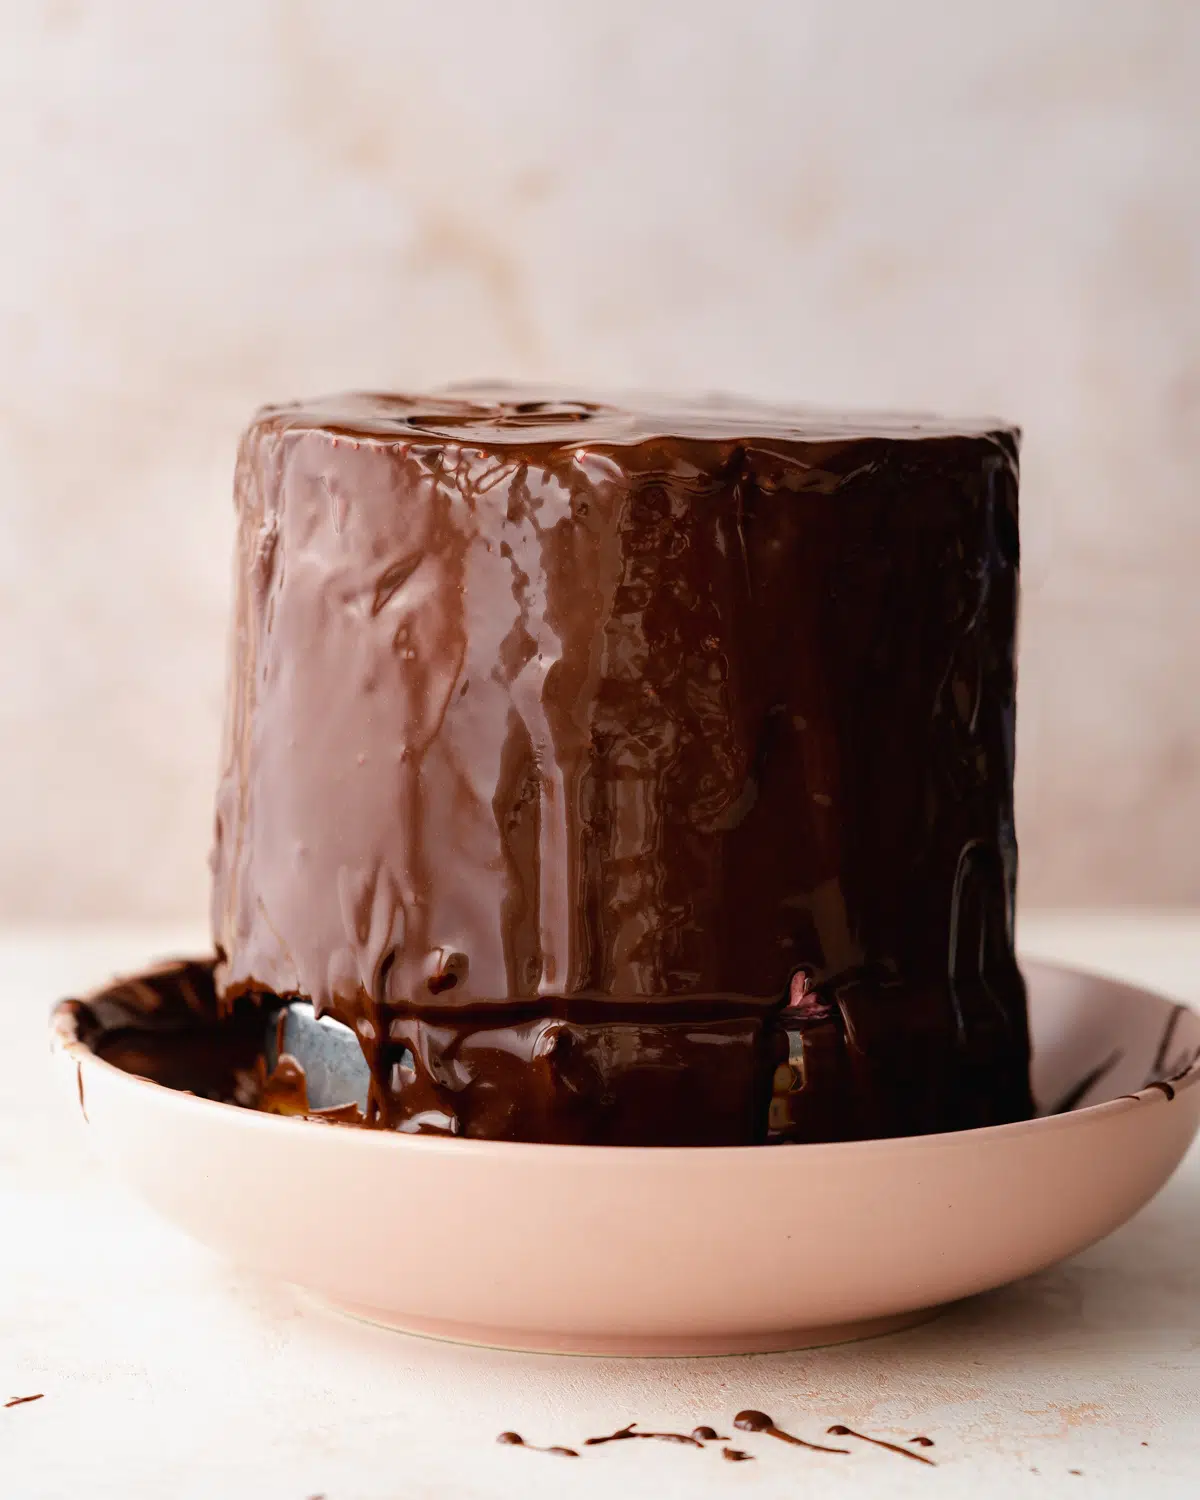 chocolate cake with ganache glaze.